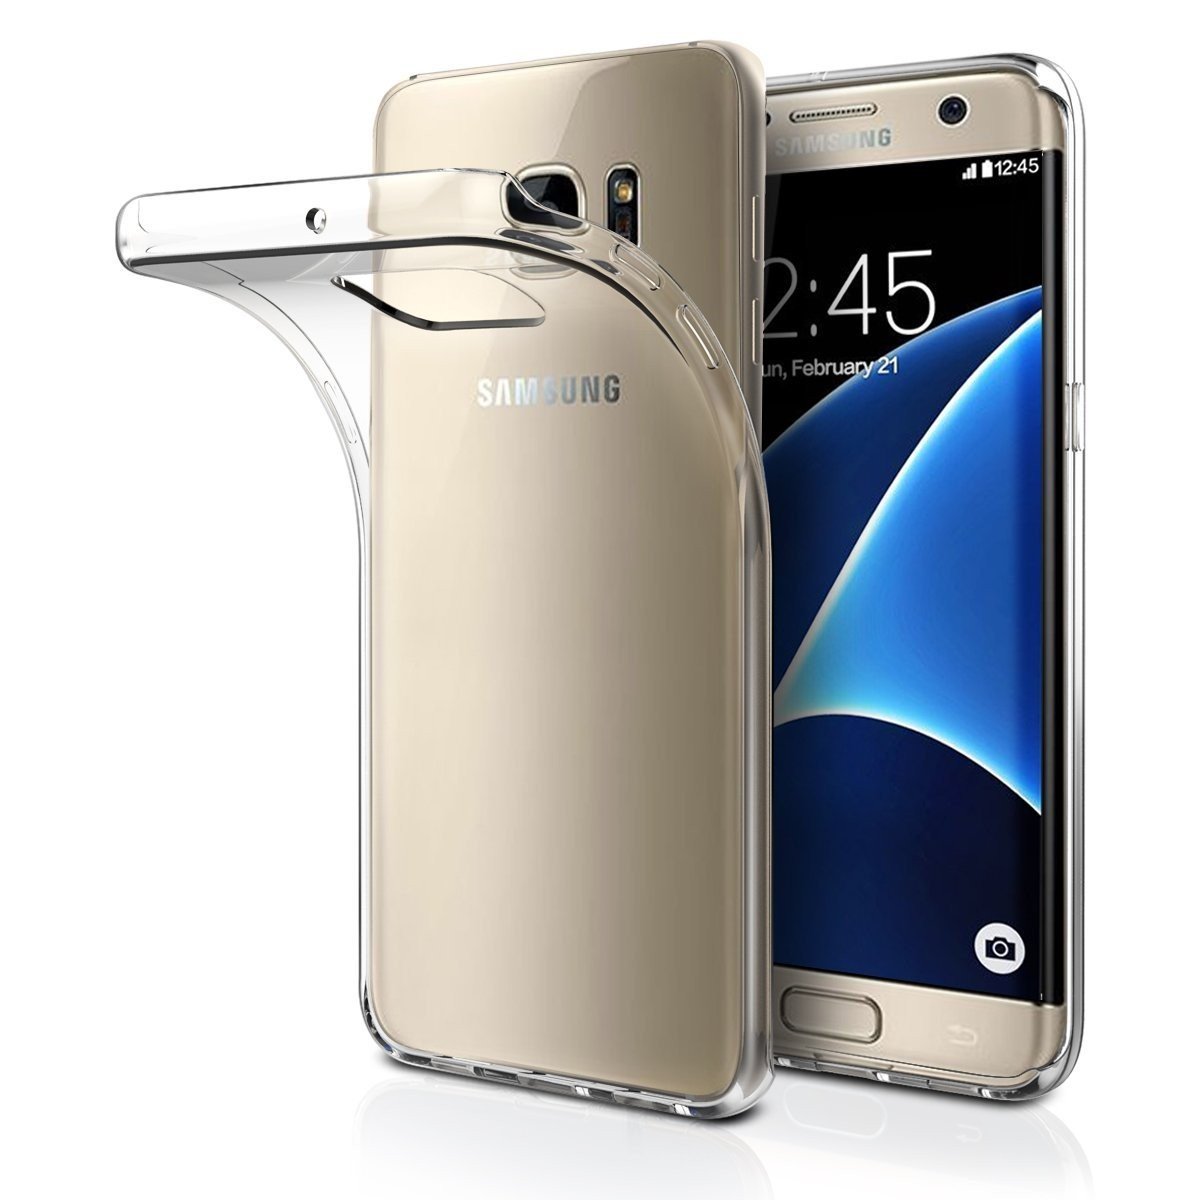 Structureel omverwerping voorkant Hoesje Samsung Galaxy S7 Edge Flexi bumper - 0,3mm - doorzichtig |  MobileSupplies.nl